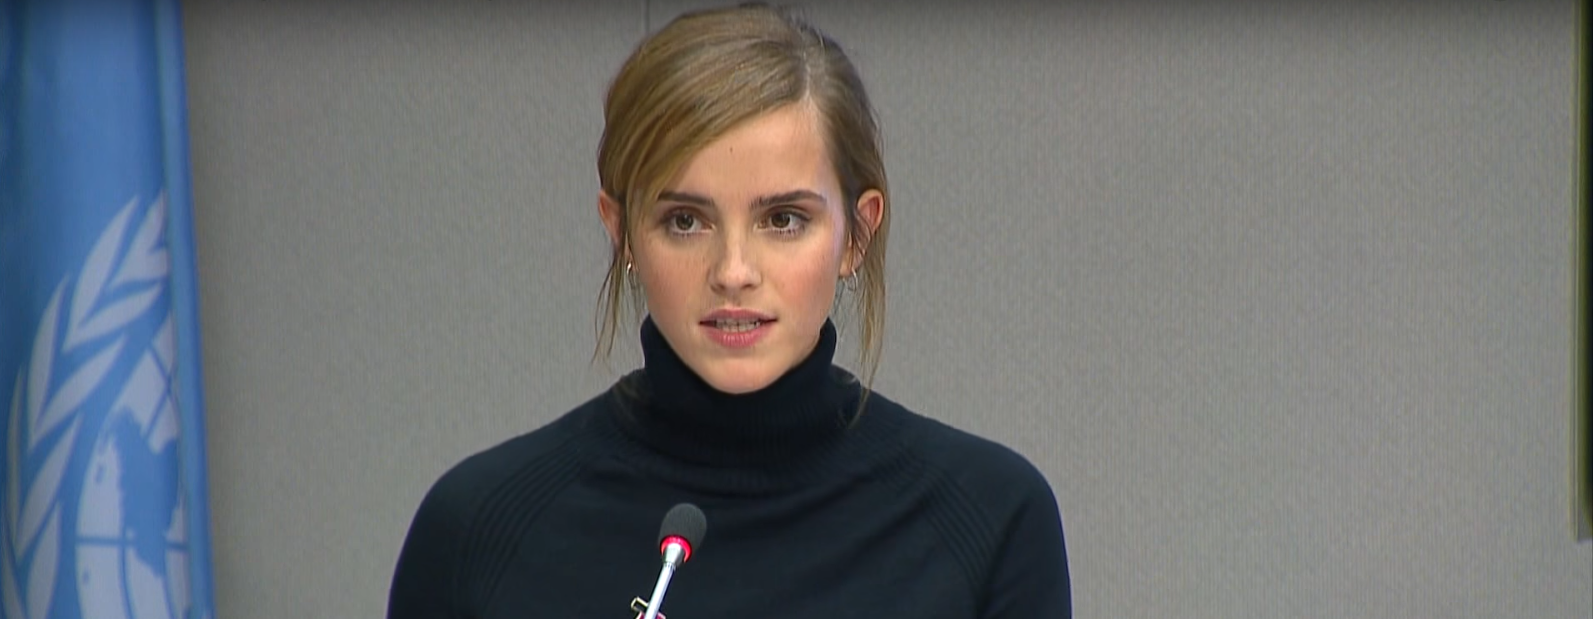 Emma Watson speaking for the U.N., 2016 on HeForShe campaign.